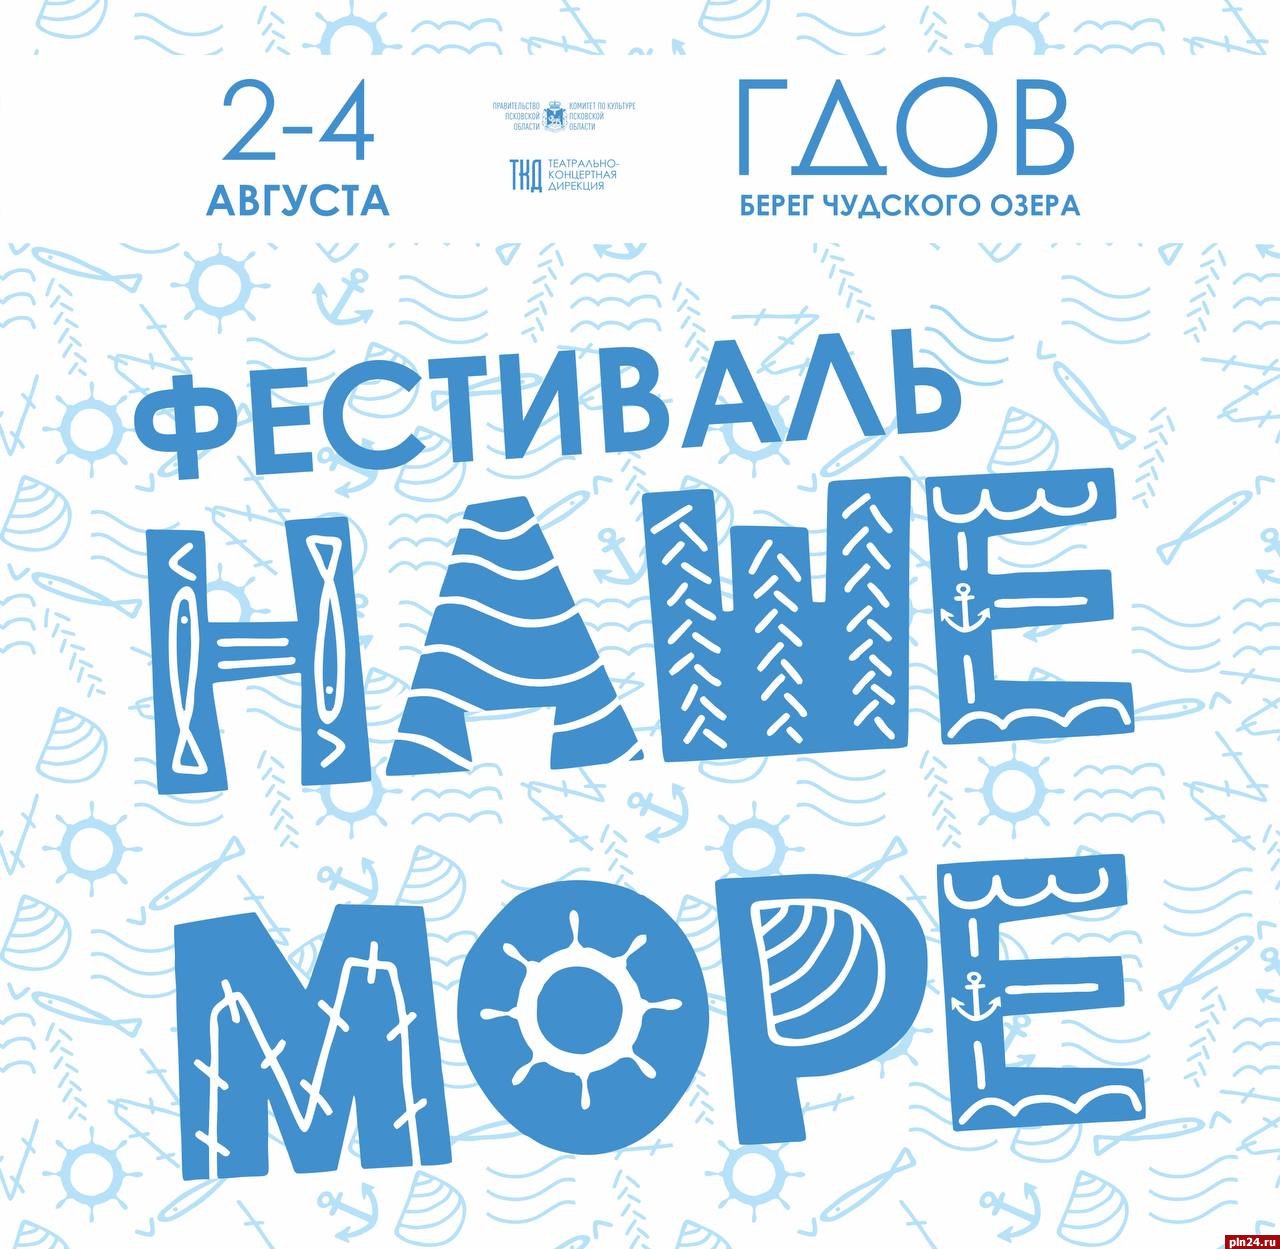 Фестиваль «Наше море» в Гдовском районе пройдет в первые выходные августа